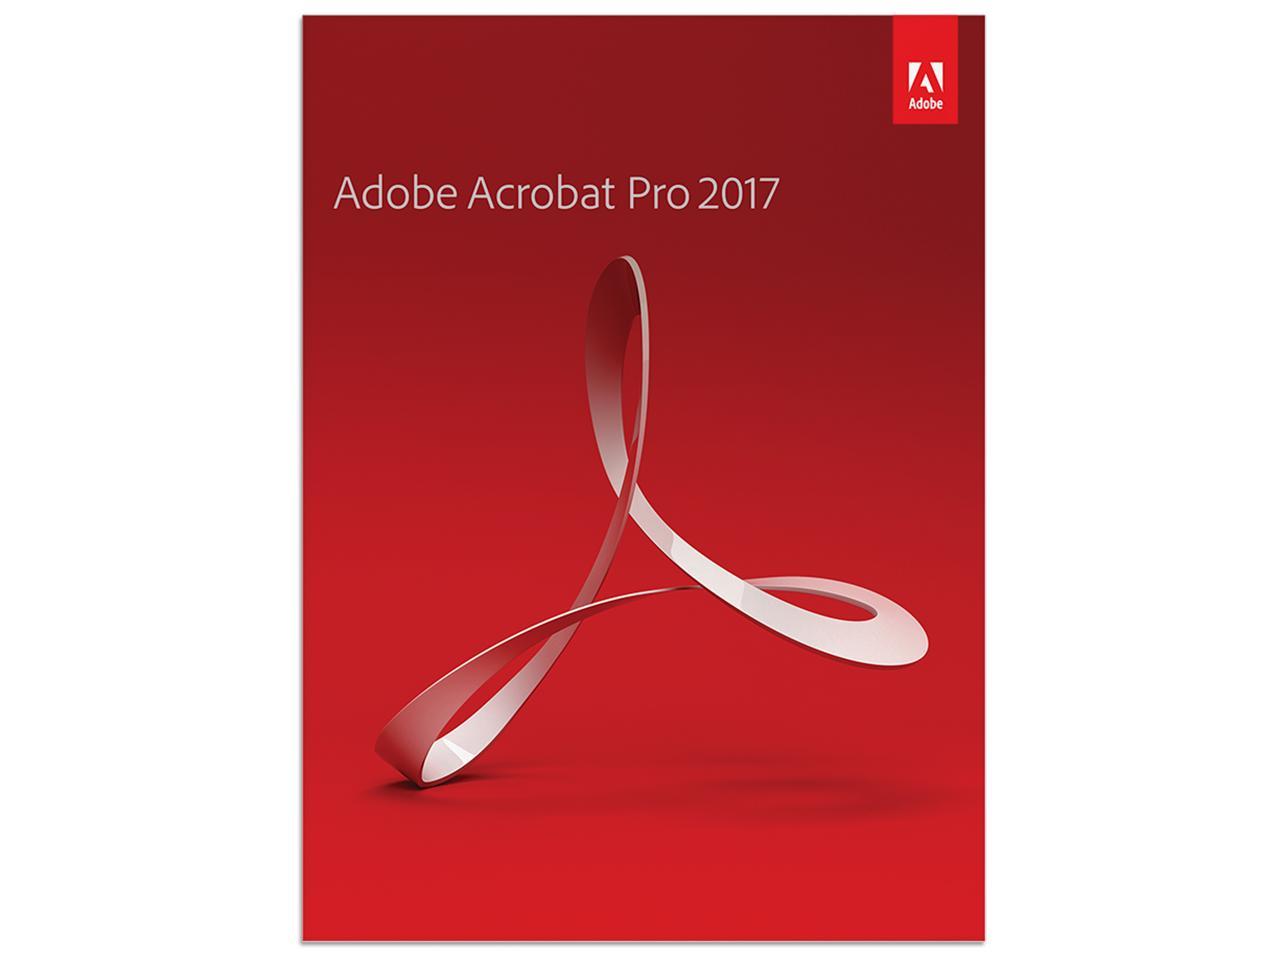 adobe acrobat pro 2017 download full version free